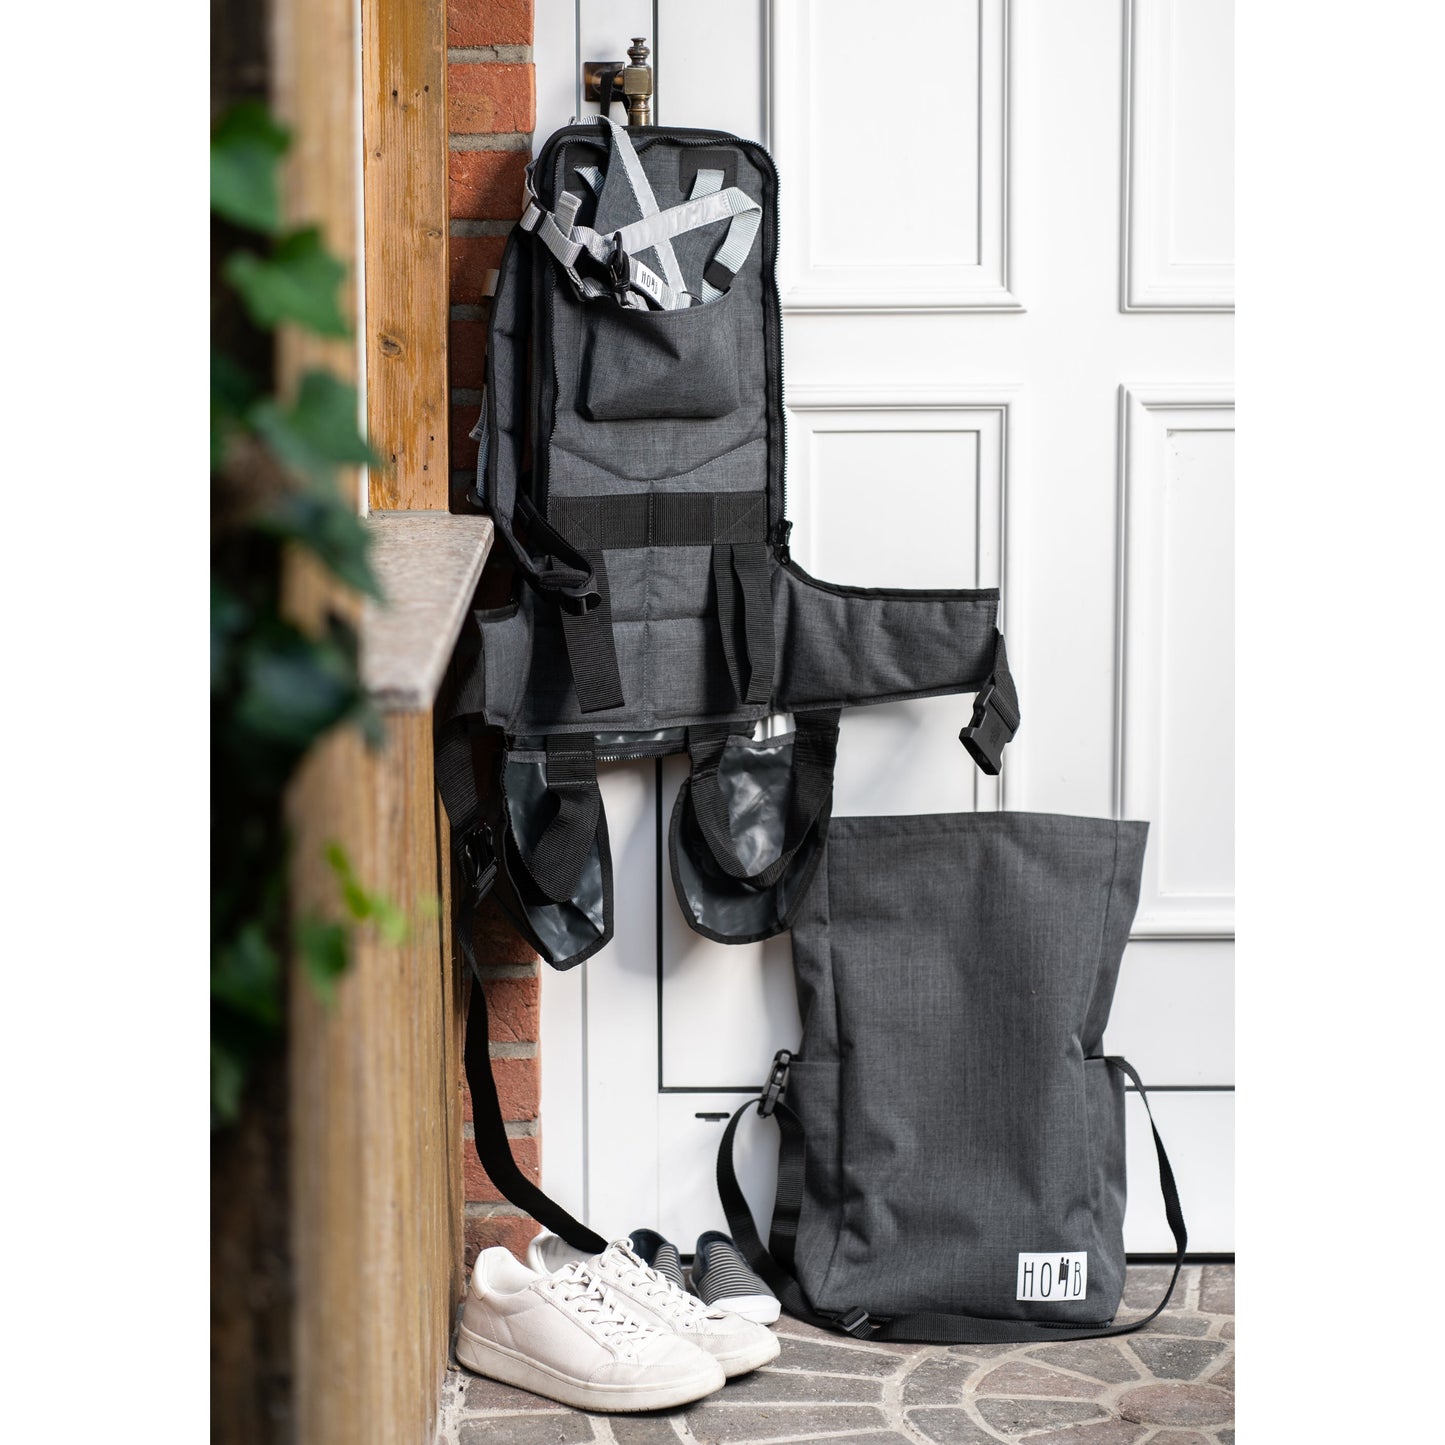 HOMB - Rucksack mit Kindertrage - Rückentrage ab 2 Jahre bis 25 kg-2